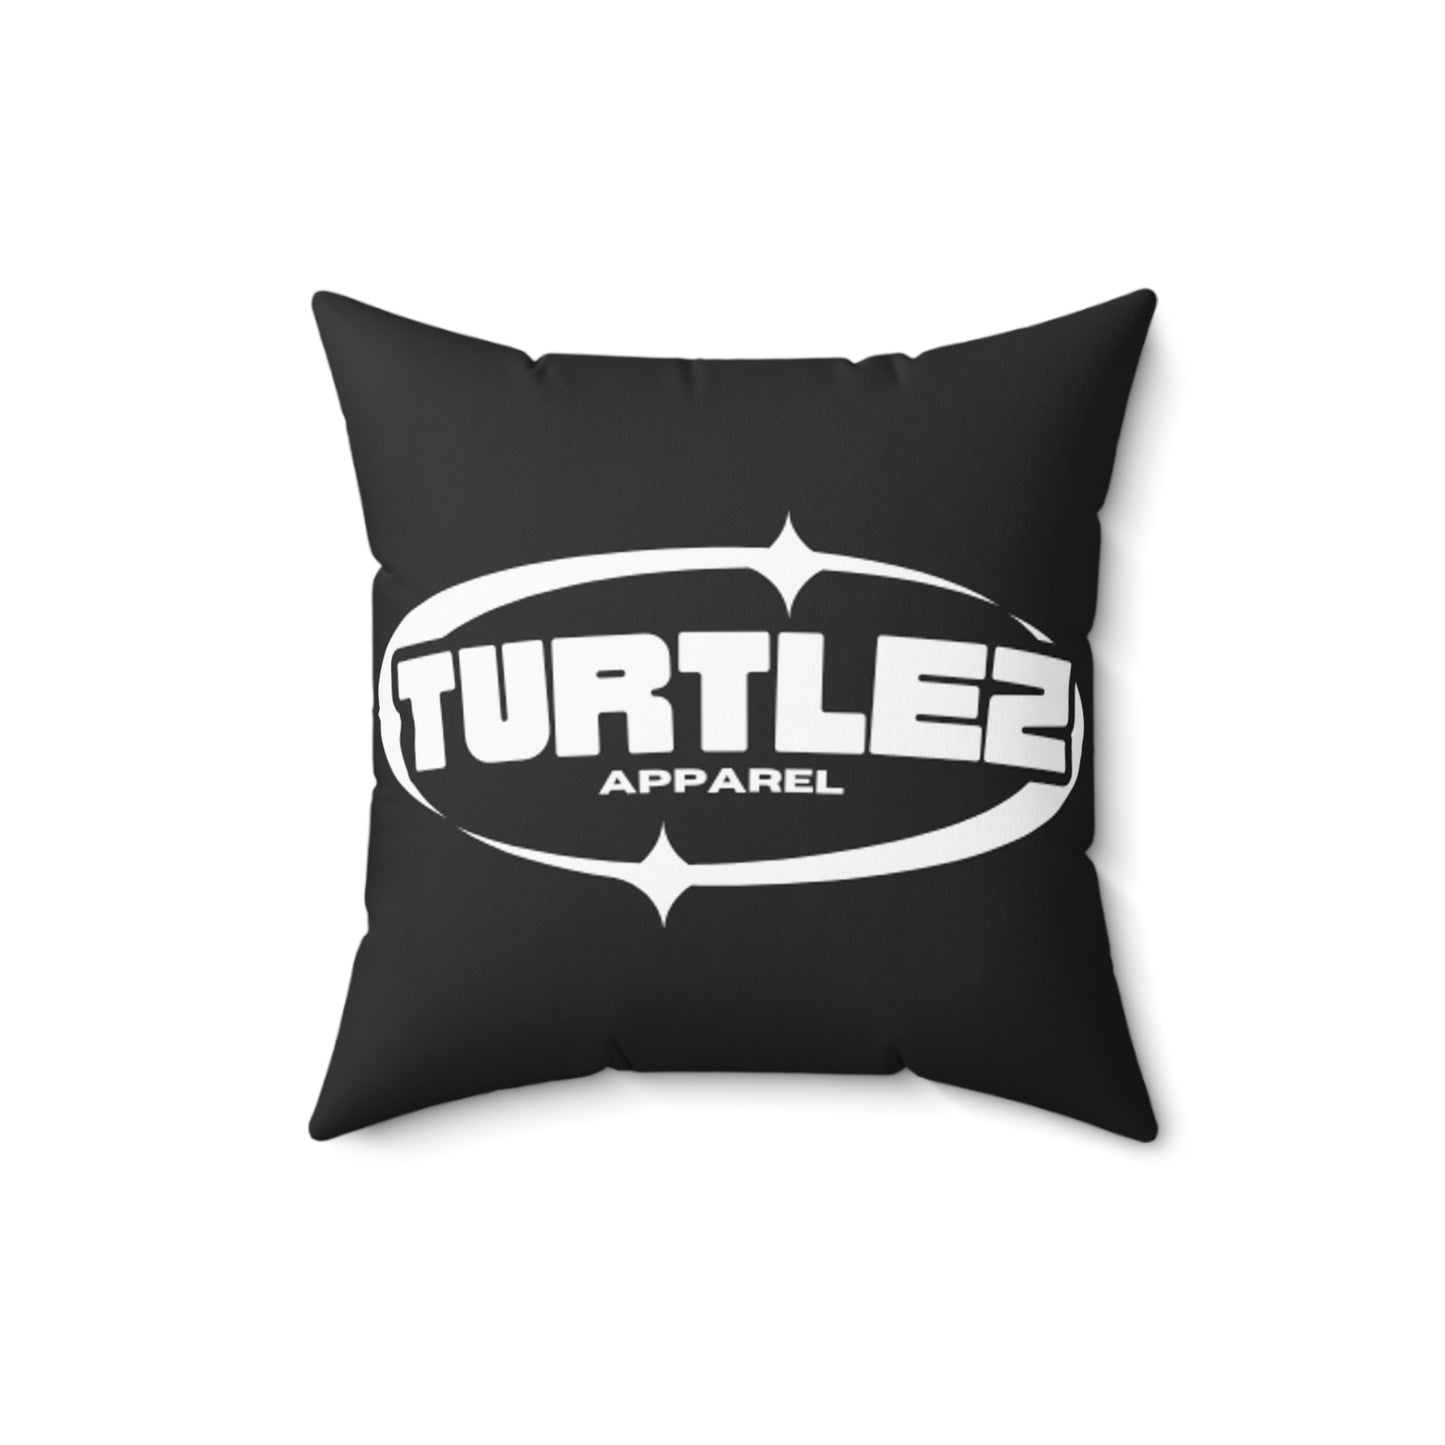 Turtlez Pillow